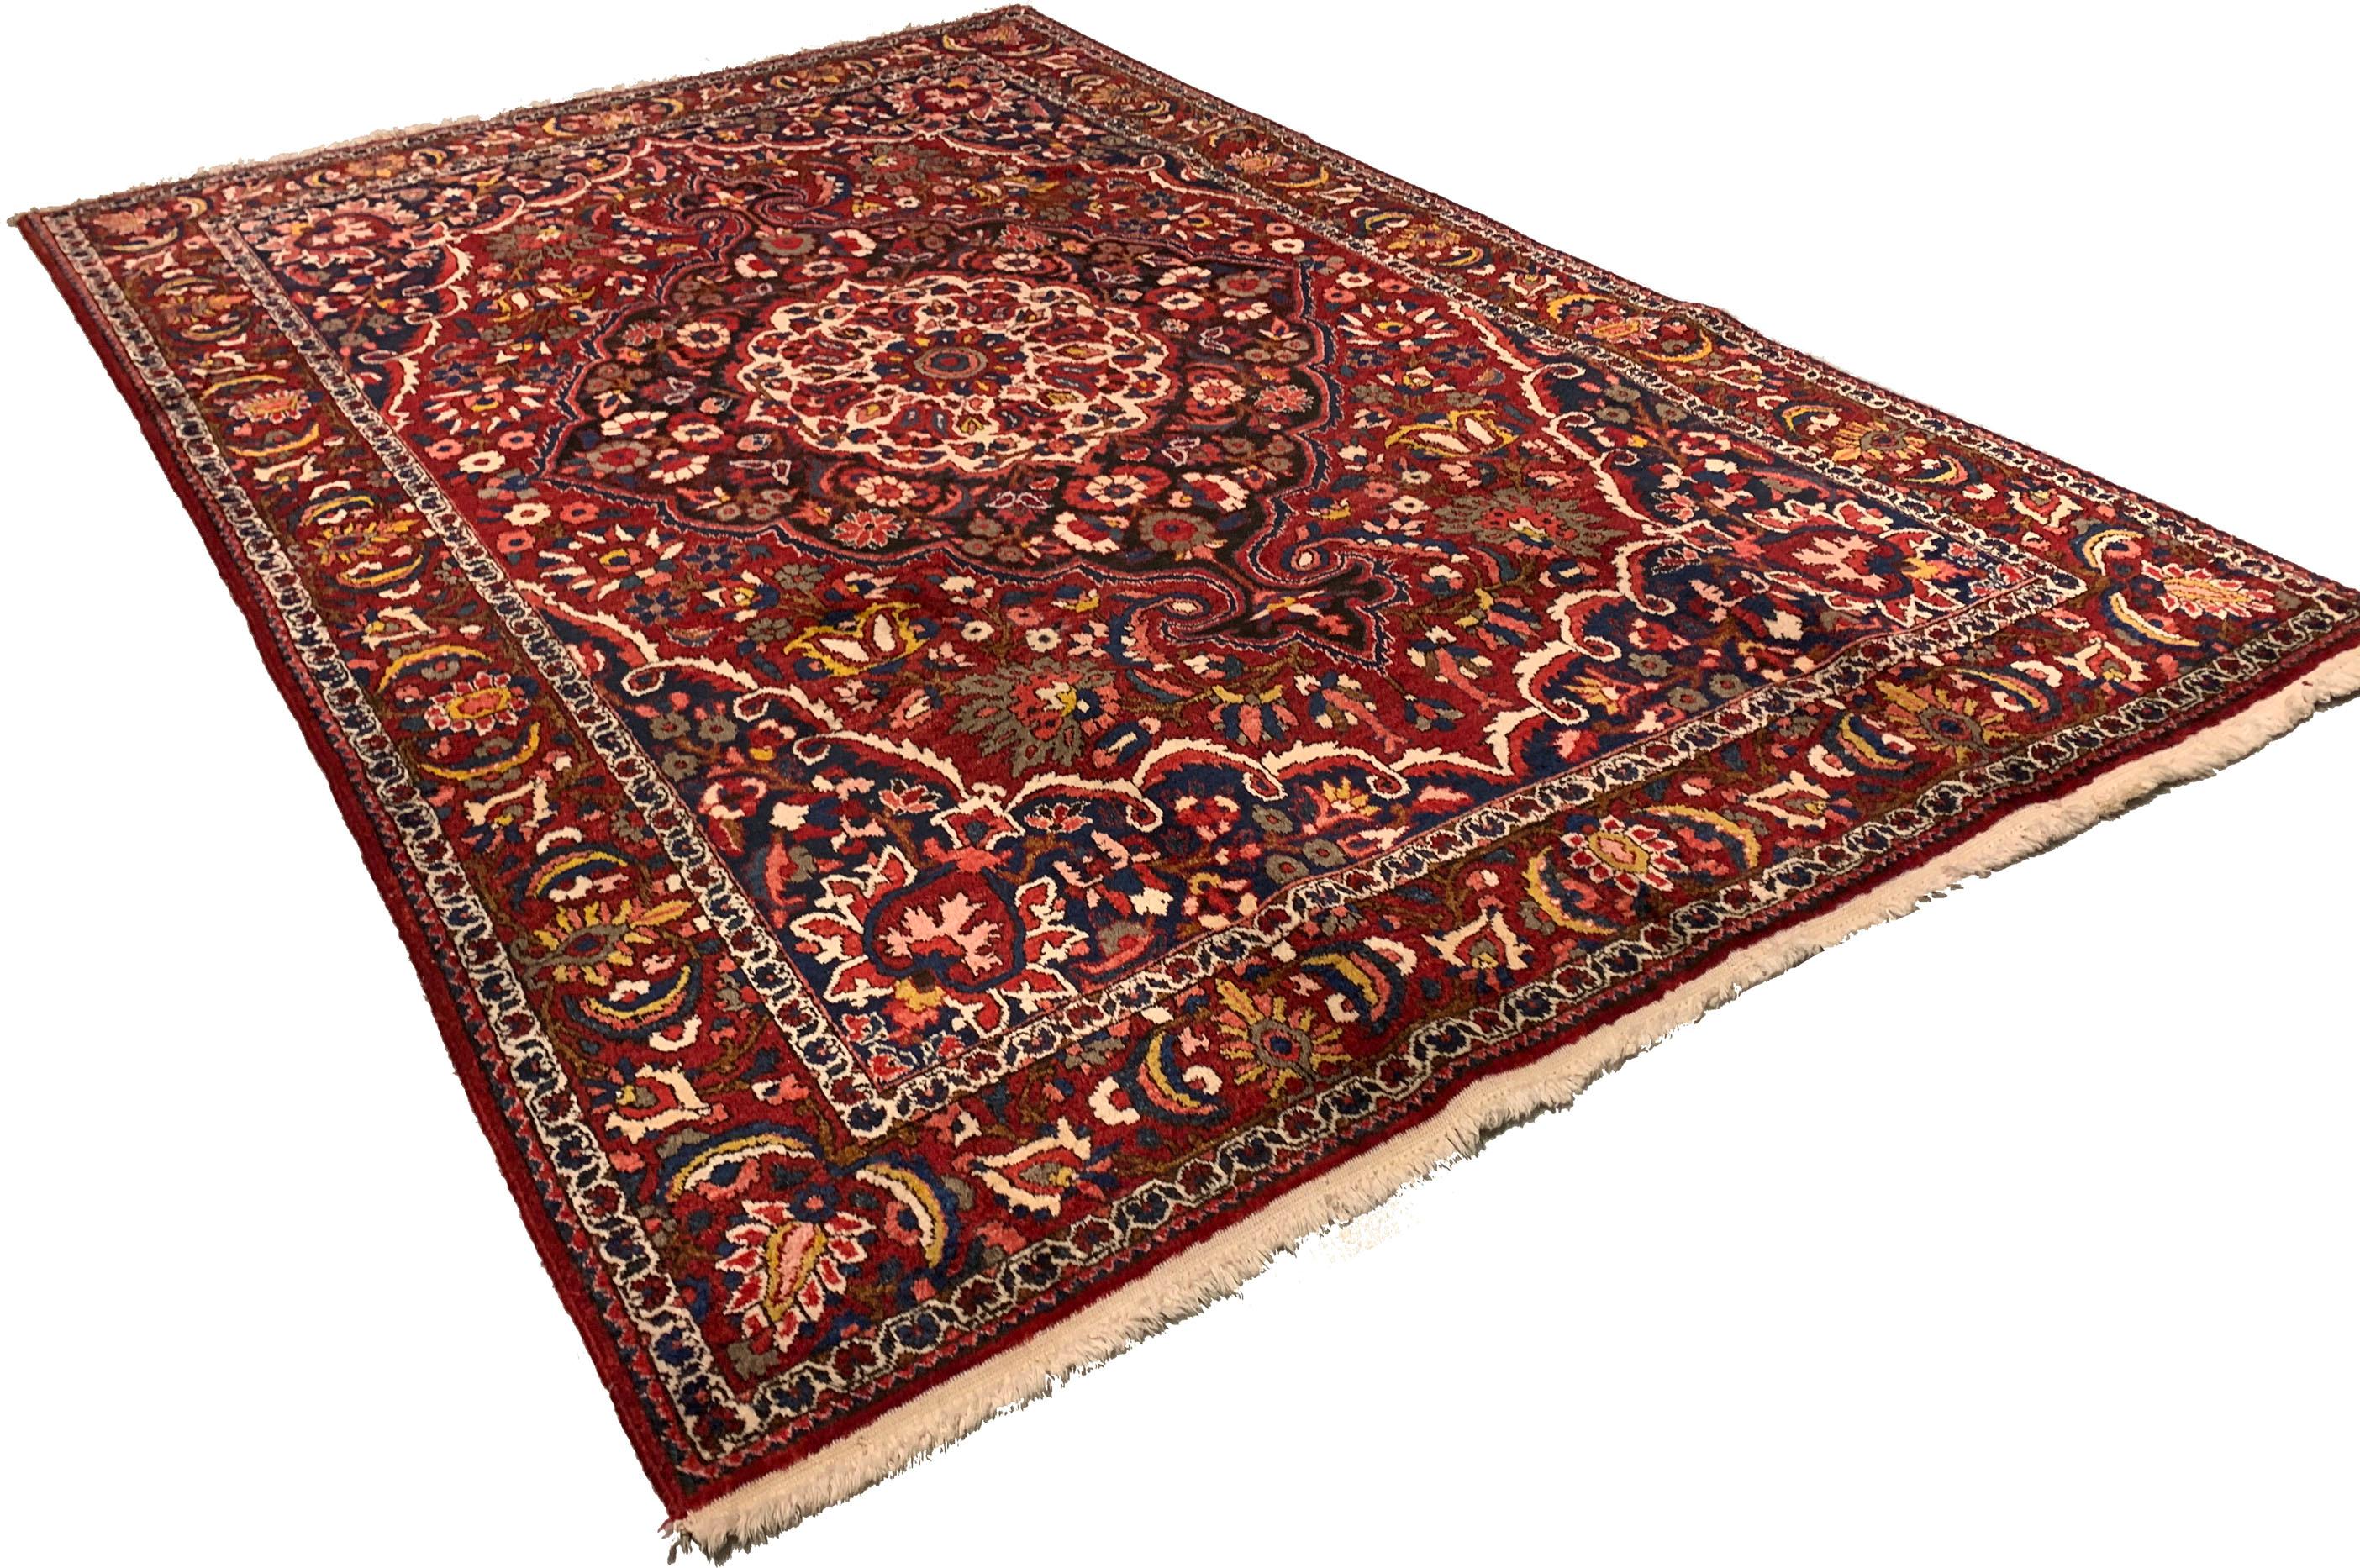 Tapis persan vintage Baktiari, 6'9 x 10'1. La région de Baktiari (Chahar Mahal), dans le centre de la Perse, près d'Ispahan, produit des tapis de village et des tapis nomades aux couleurs vives, aux motifs en treillis et aux constructions robustes.